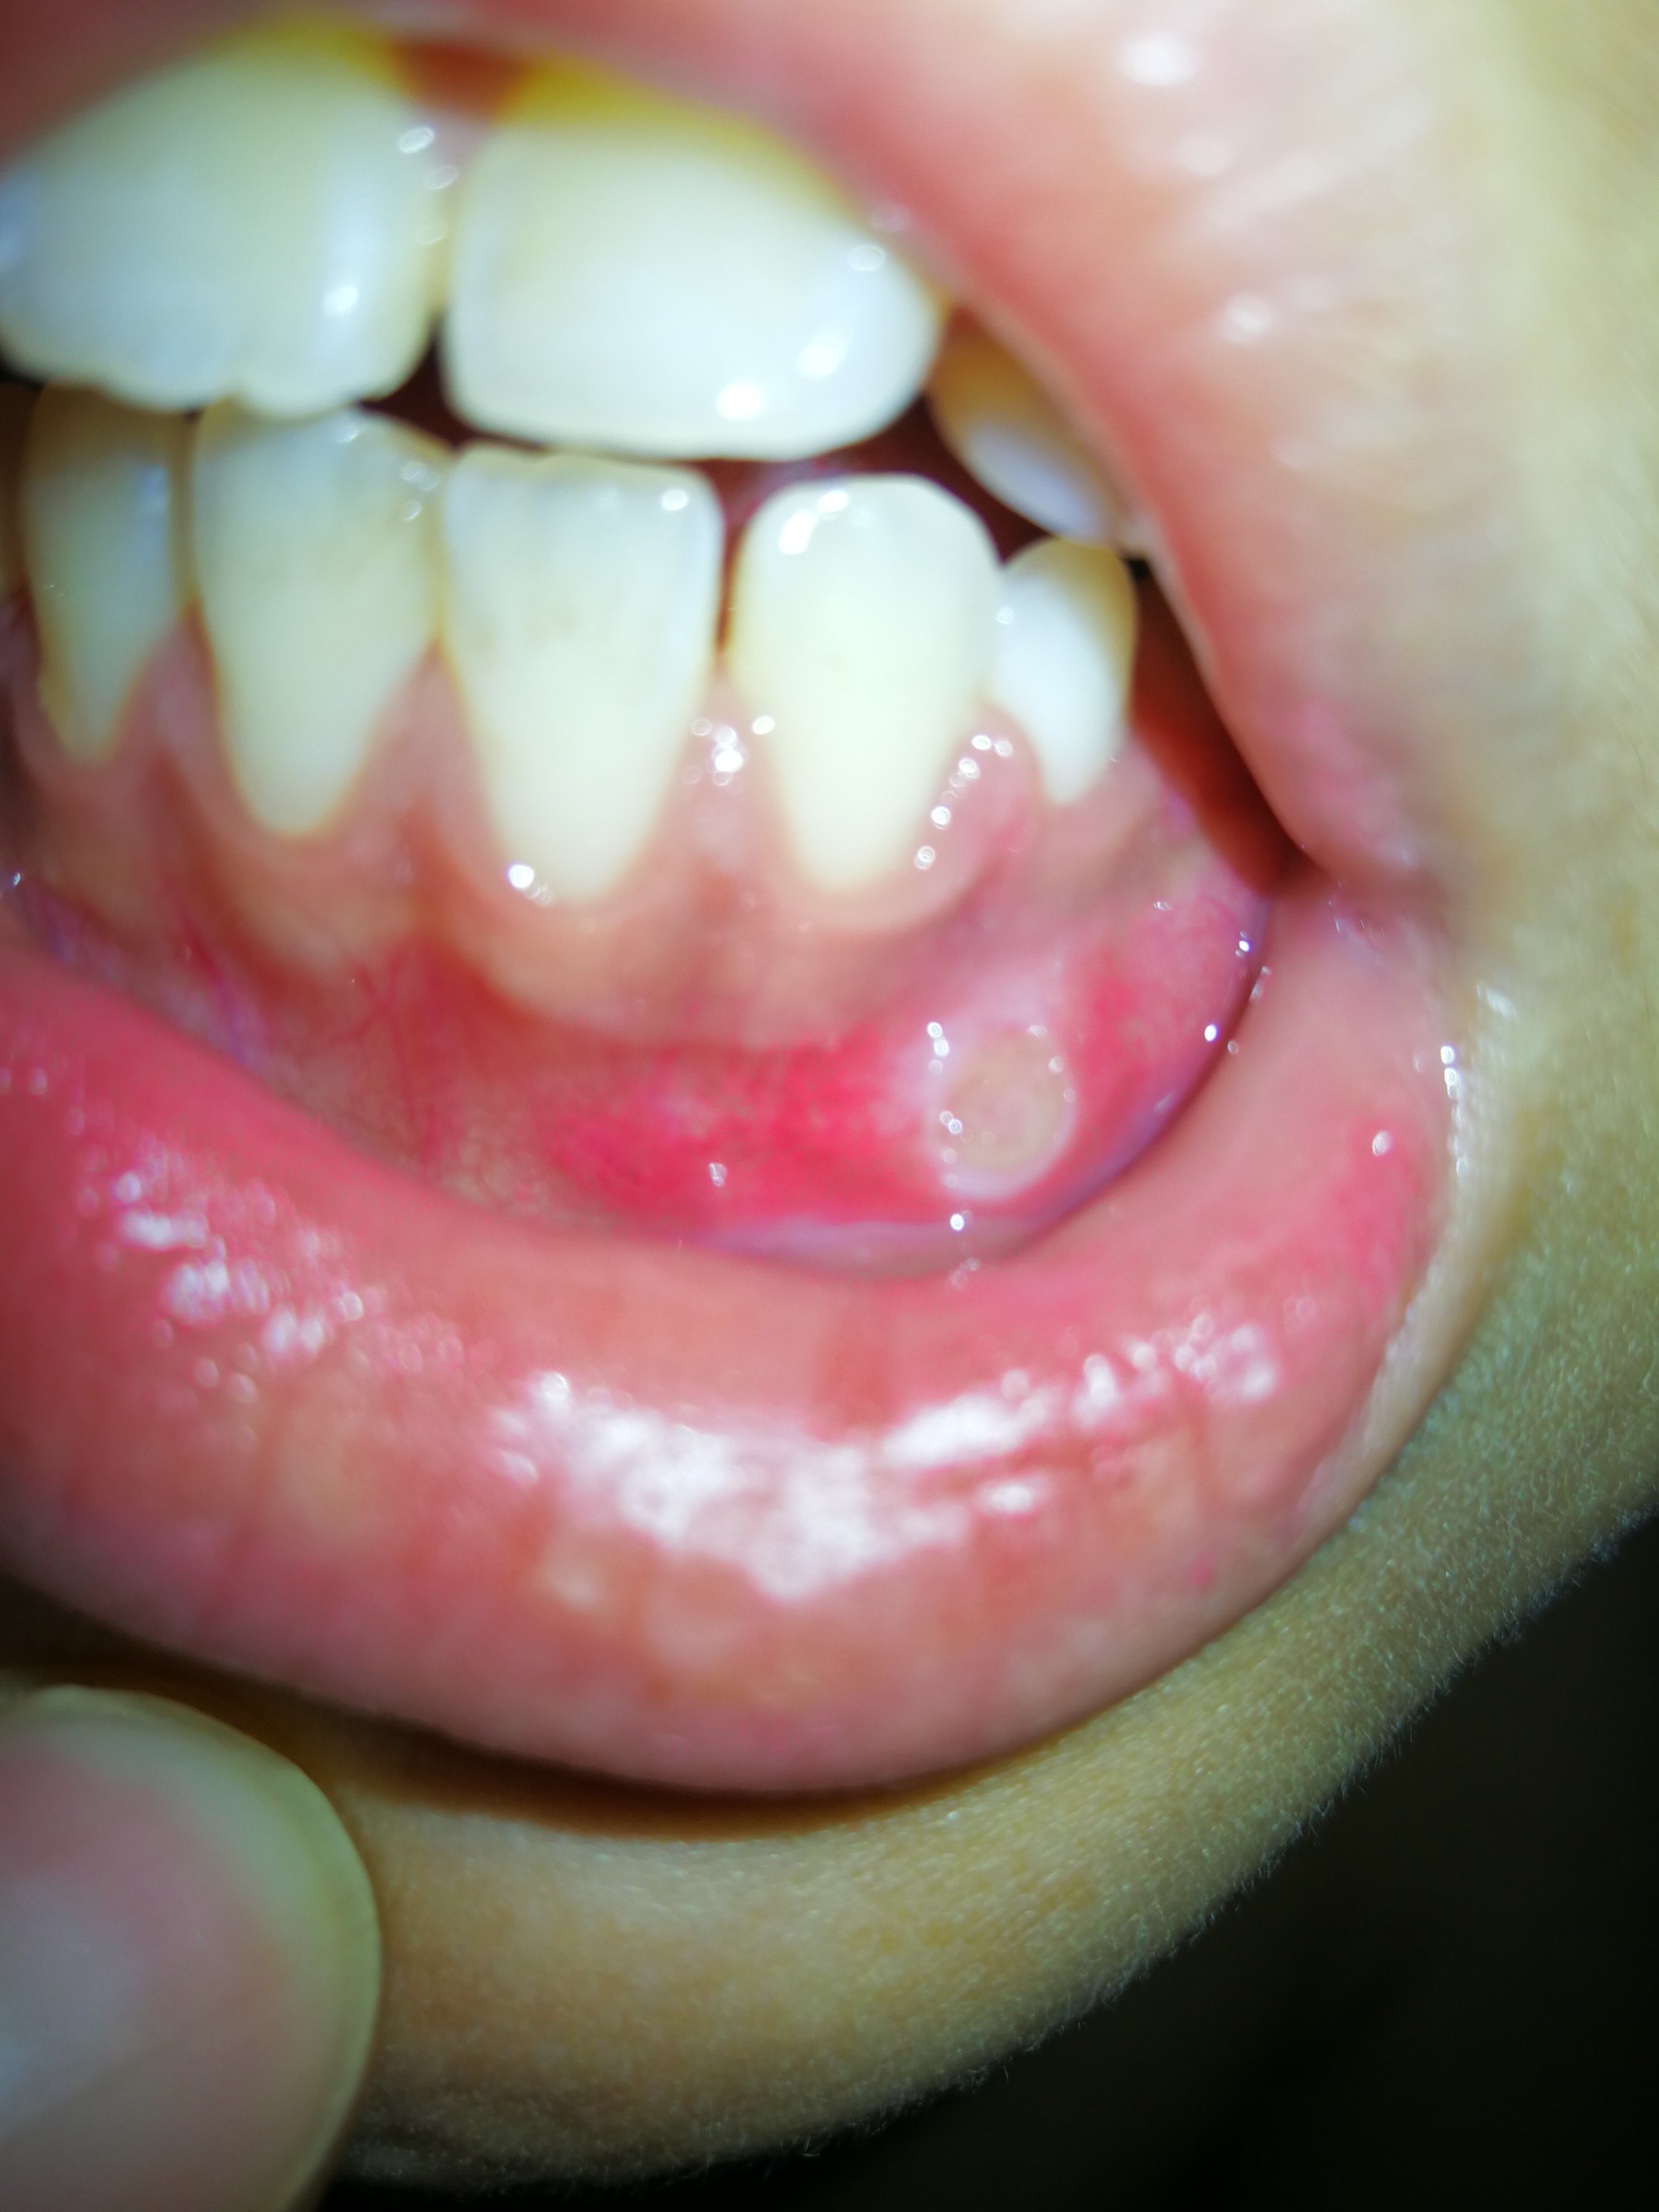 口腔溃疡的表现症状图片